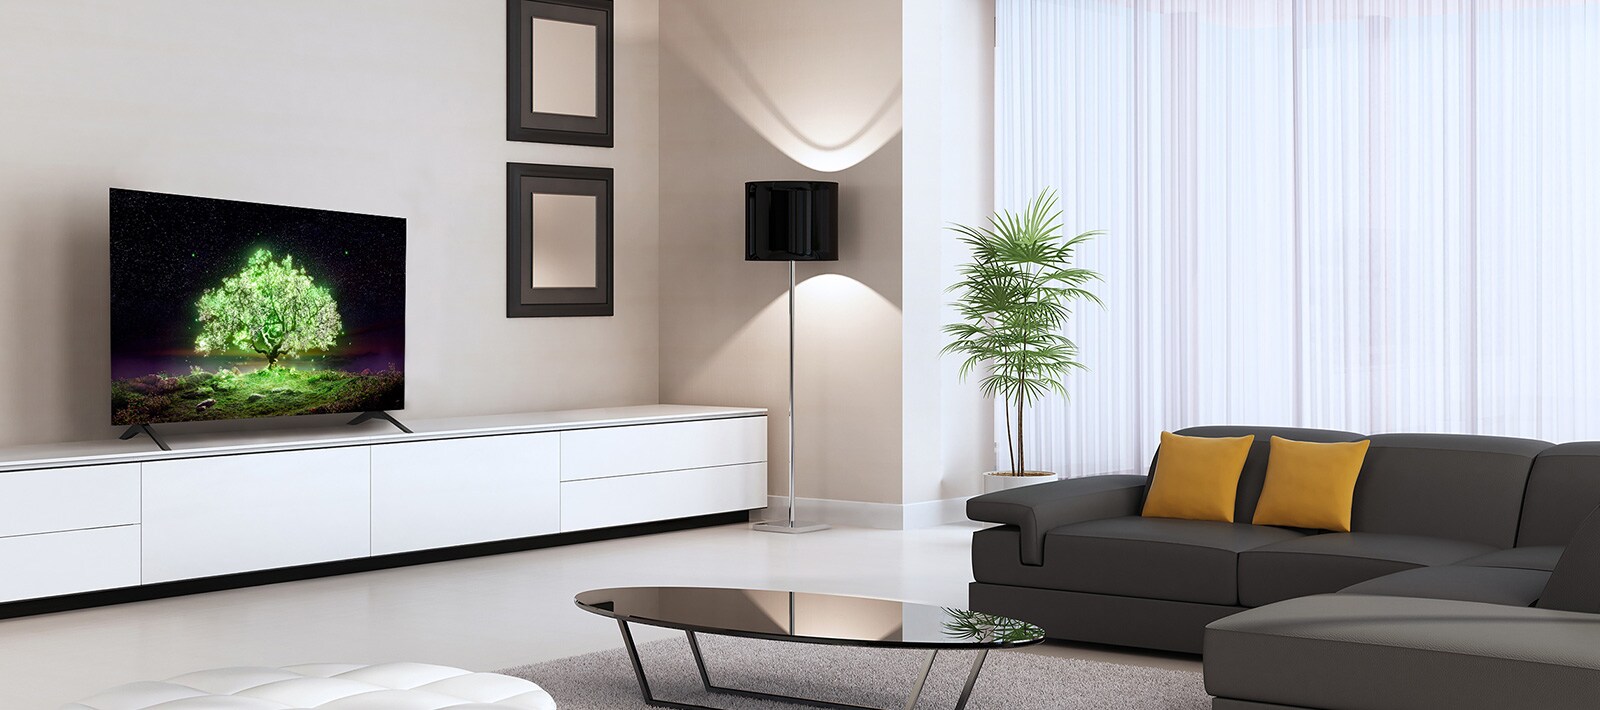 טלוויזיית OLED A1 מוצבת בסלון חושי. בטלוויזיה ניתן לראות תמונה של עץ זוהר בצבע ירוק.